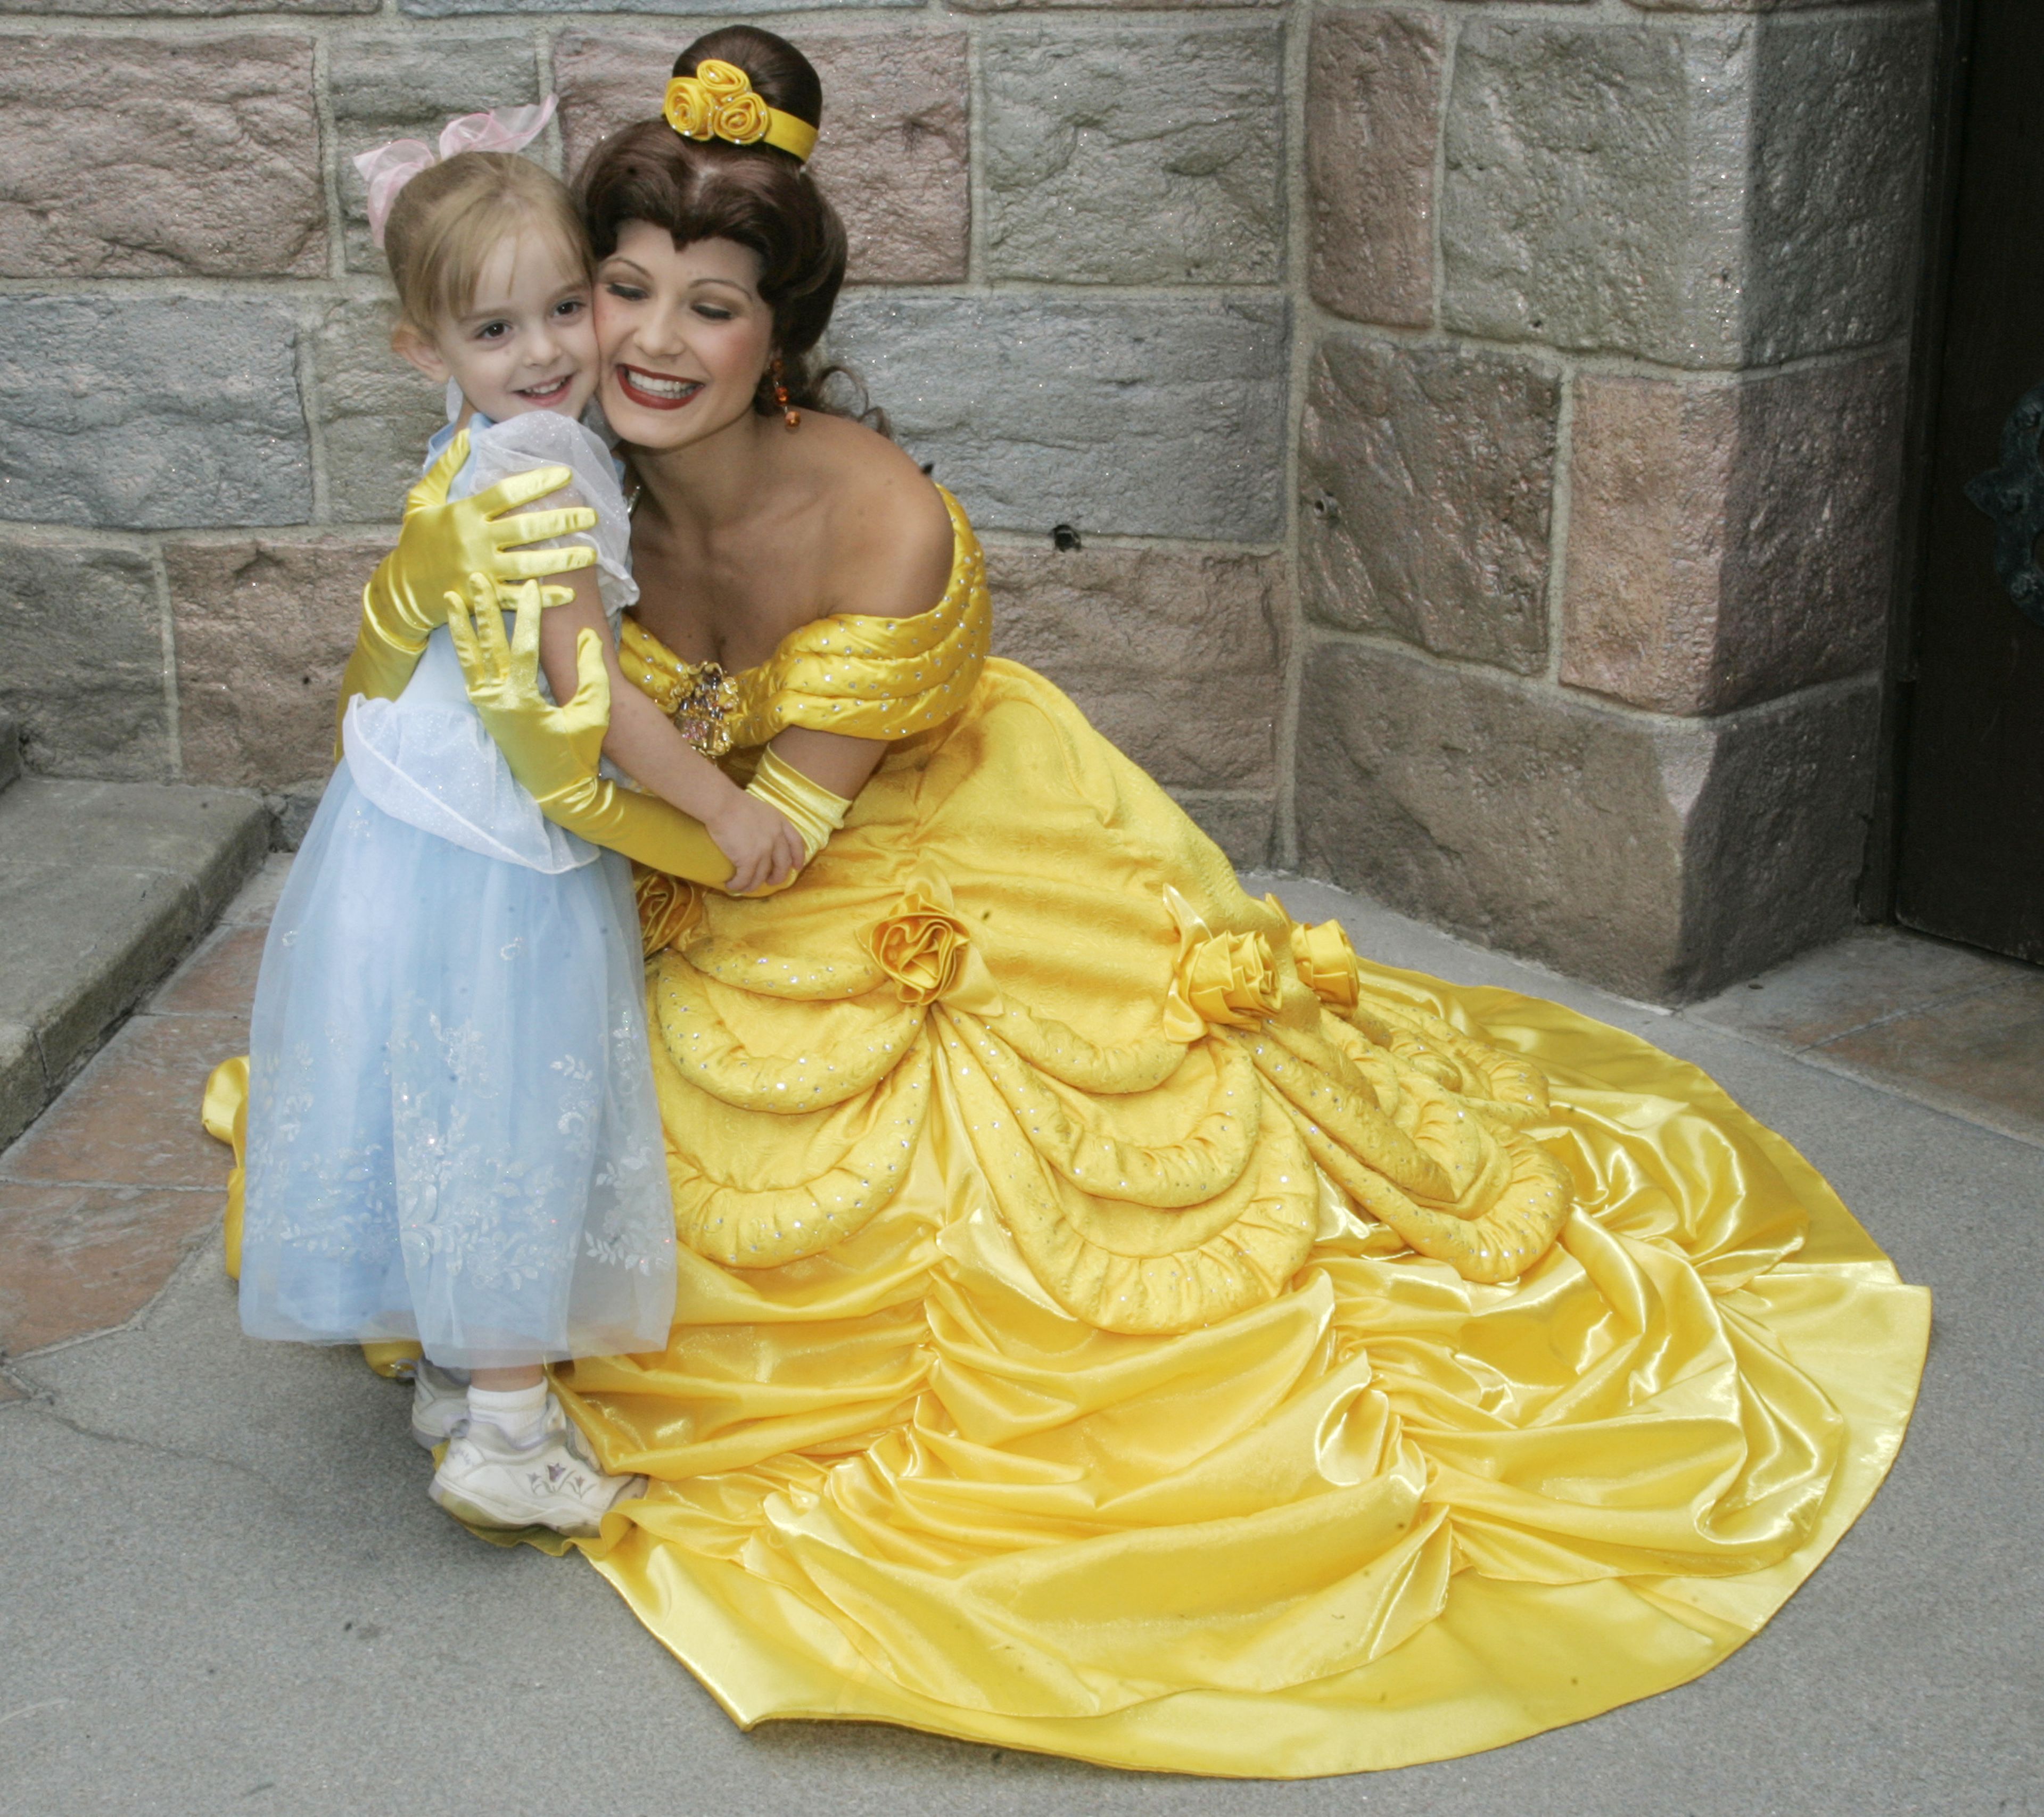 Son las princesas Disney buenos modelos de liderazgo?